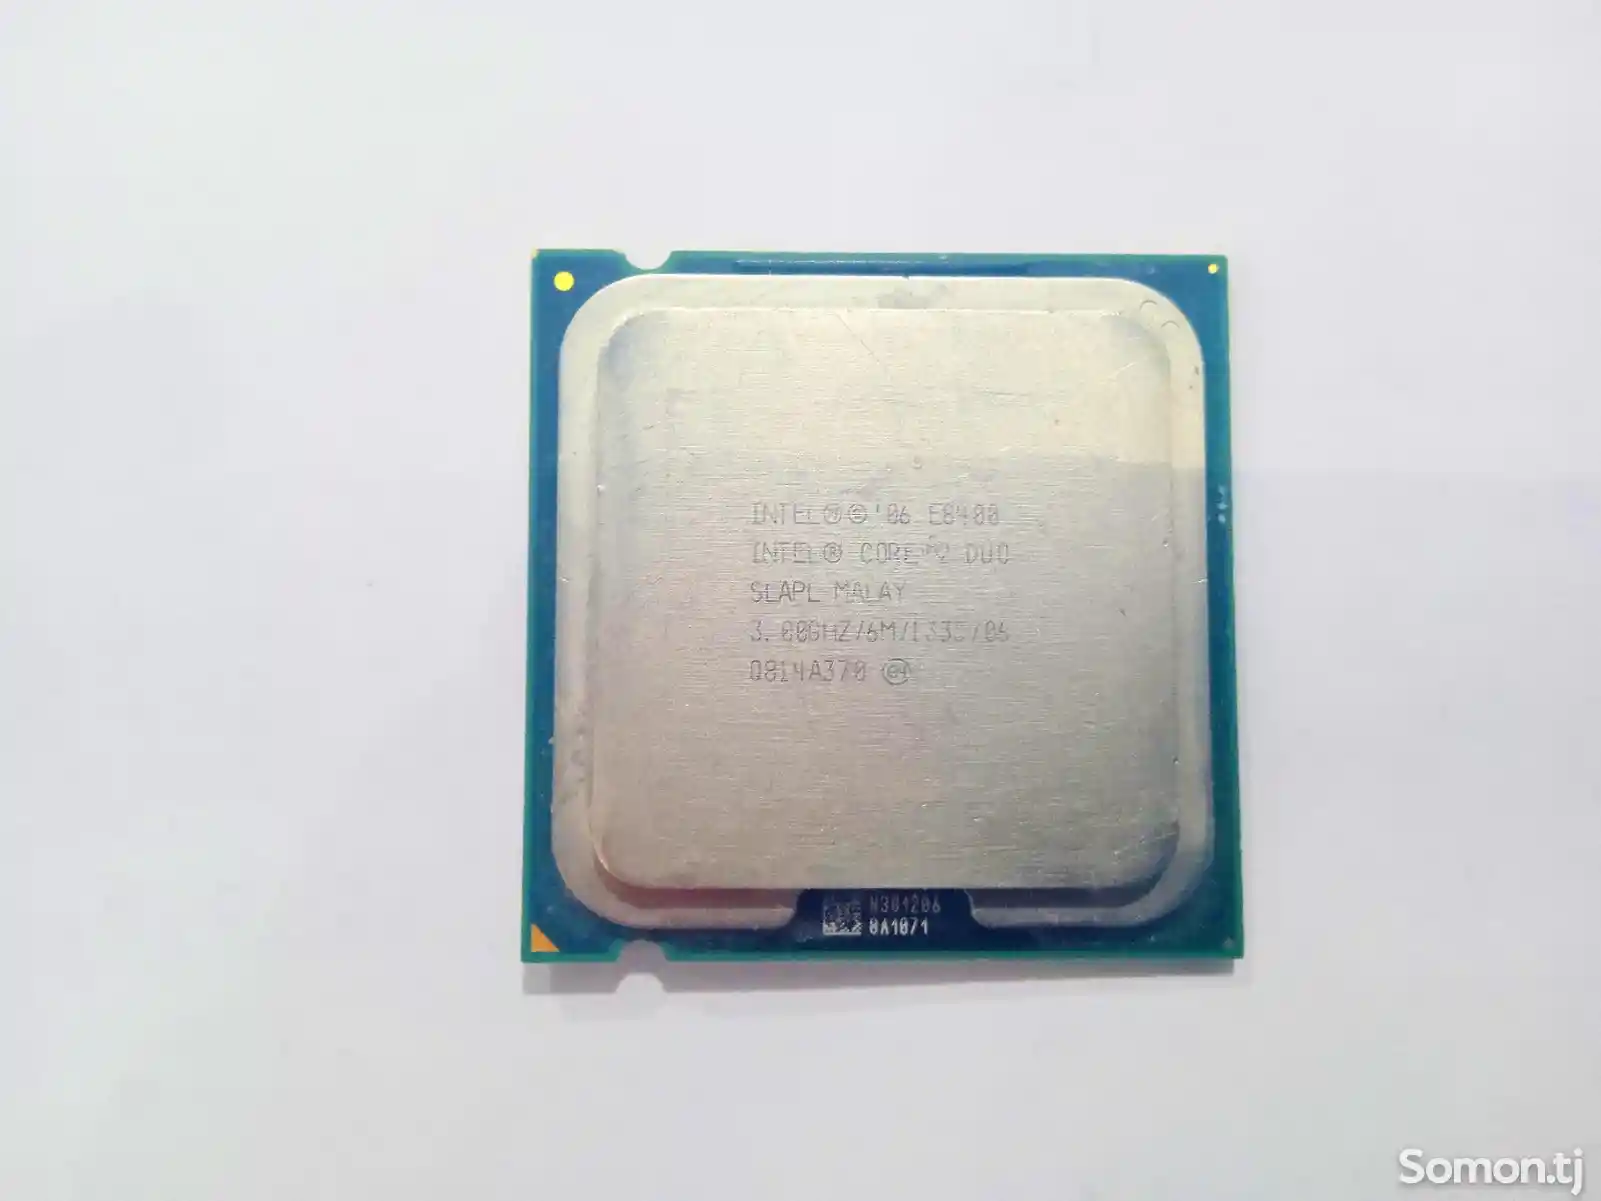 Оперативка Intel Celeron 2 duo/3.06hz